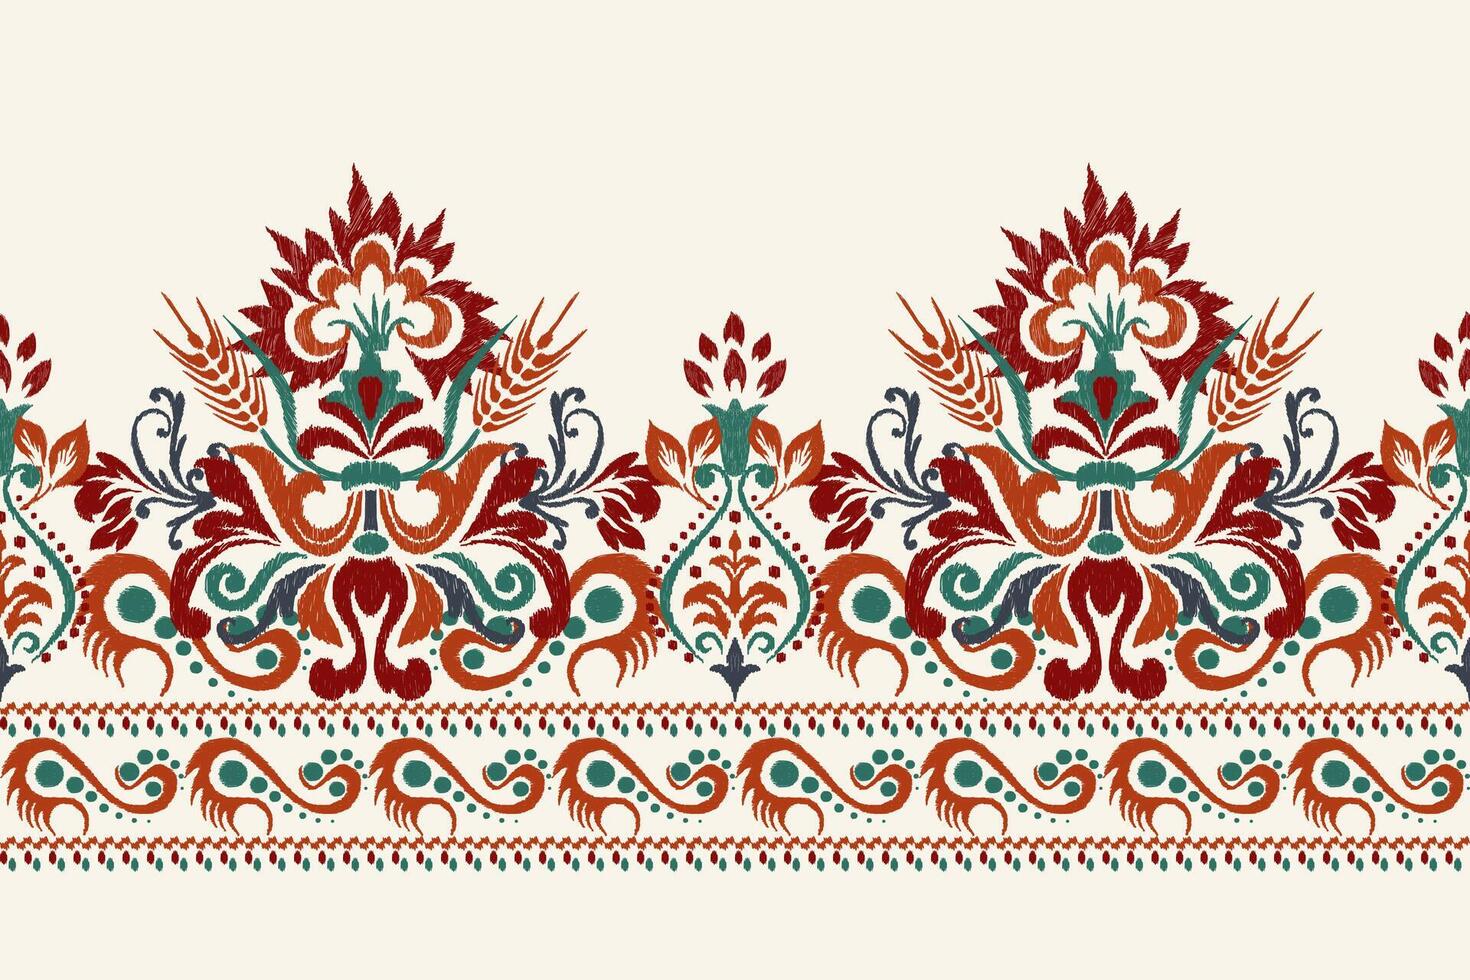 digitaal schilderij waterverf patroon.ikat bloemen borduurwerk Aan wit achtergrond vector illustratie.azteken stijl, hand getekend, inkt textuur.ontwerp voor textuur, stof, kleding ,decoratie,sarong,sjaal,print.